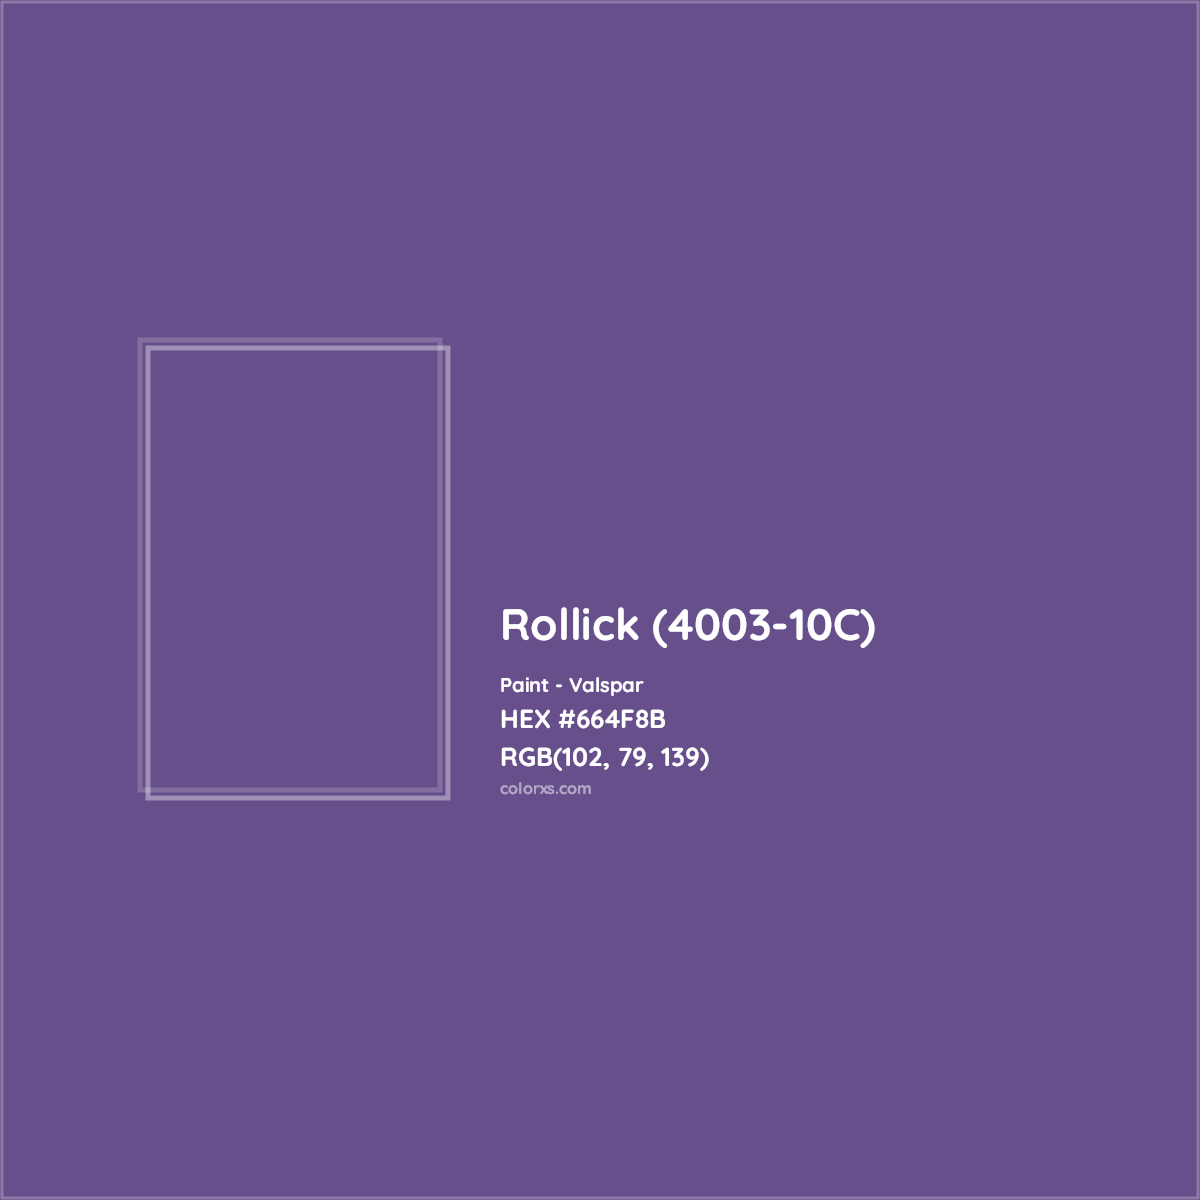 HEX #664F8B Rollick (4003-10C) Paint Valspar - Color Code